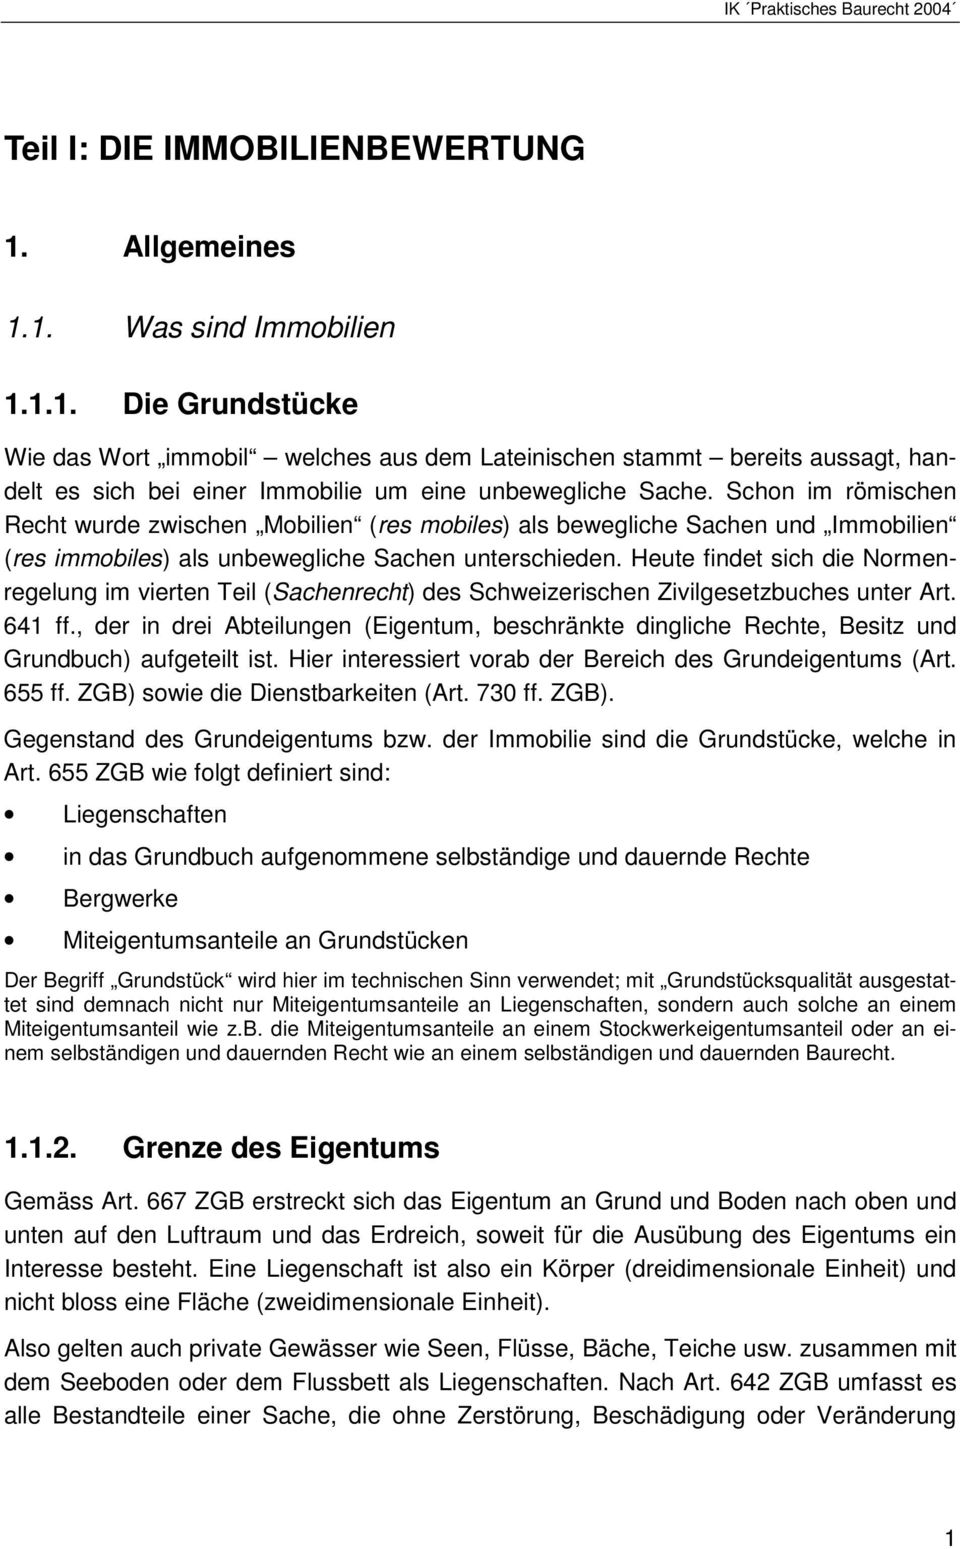 Heute findet sich die Normenregelung im vierten Teil (Sachenrecht) des Schweizerischen Zivilgesetzbuches unter Art. 641 ff.